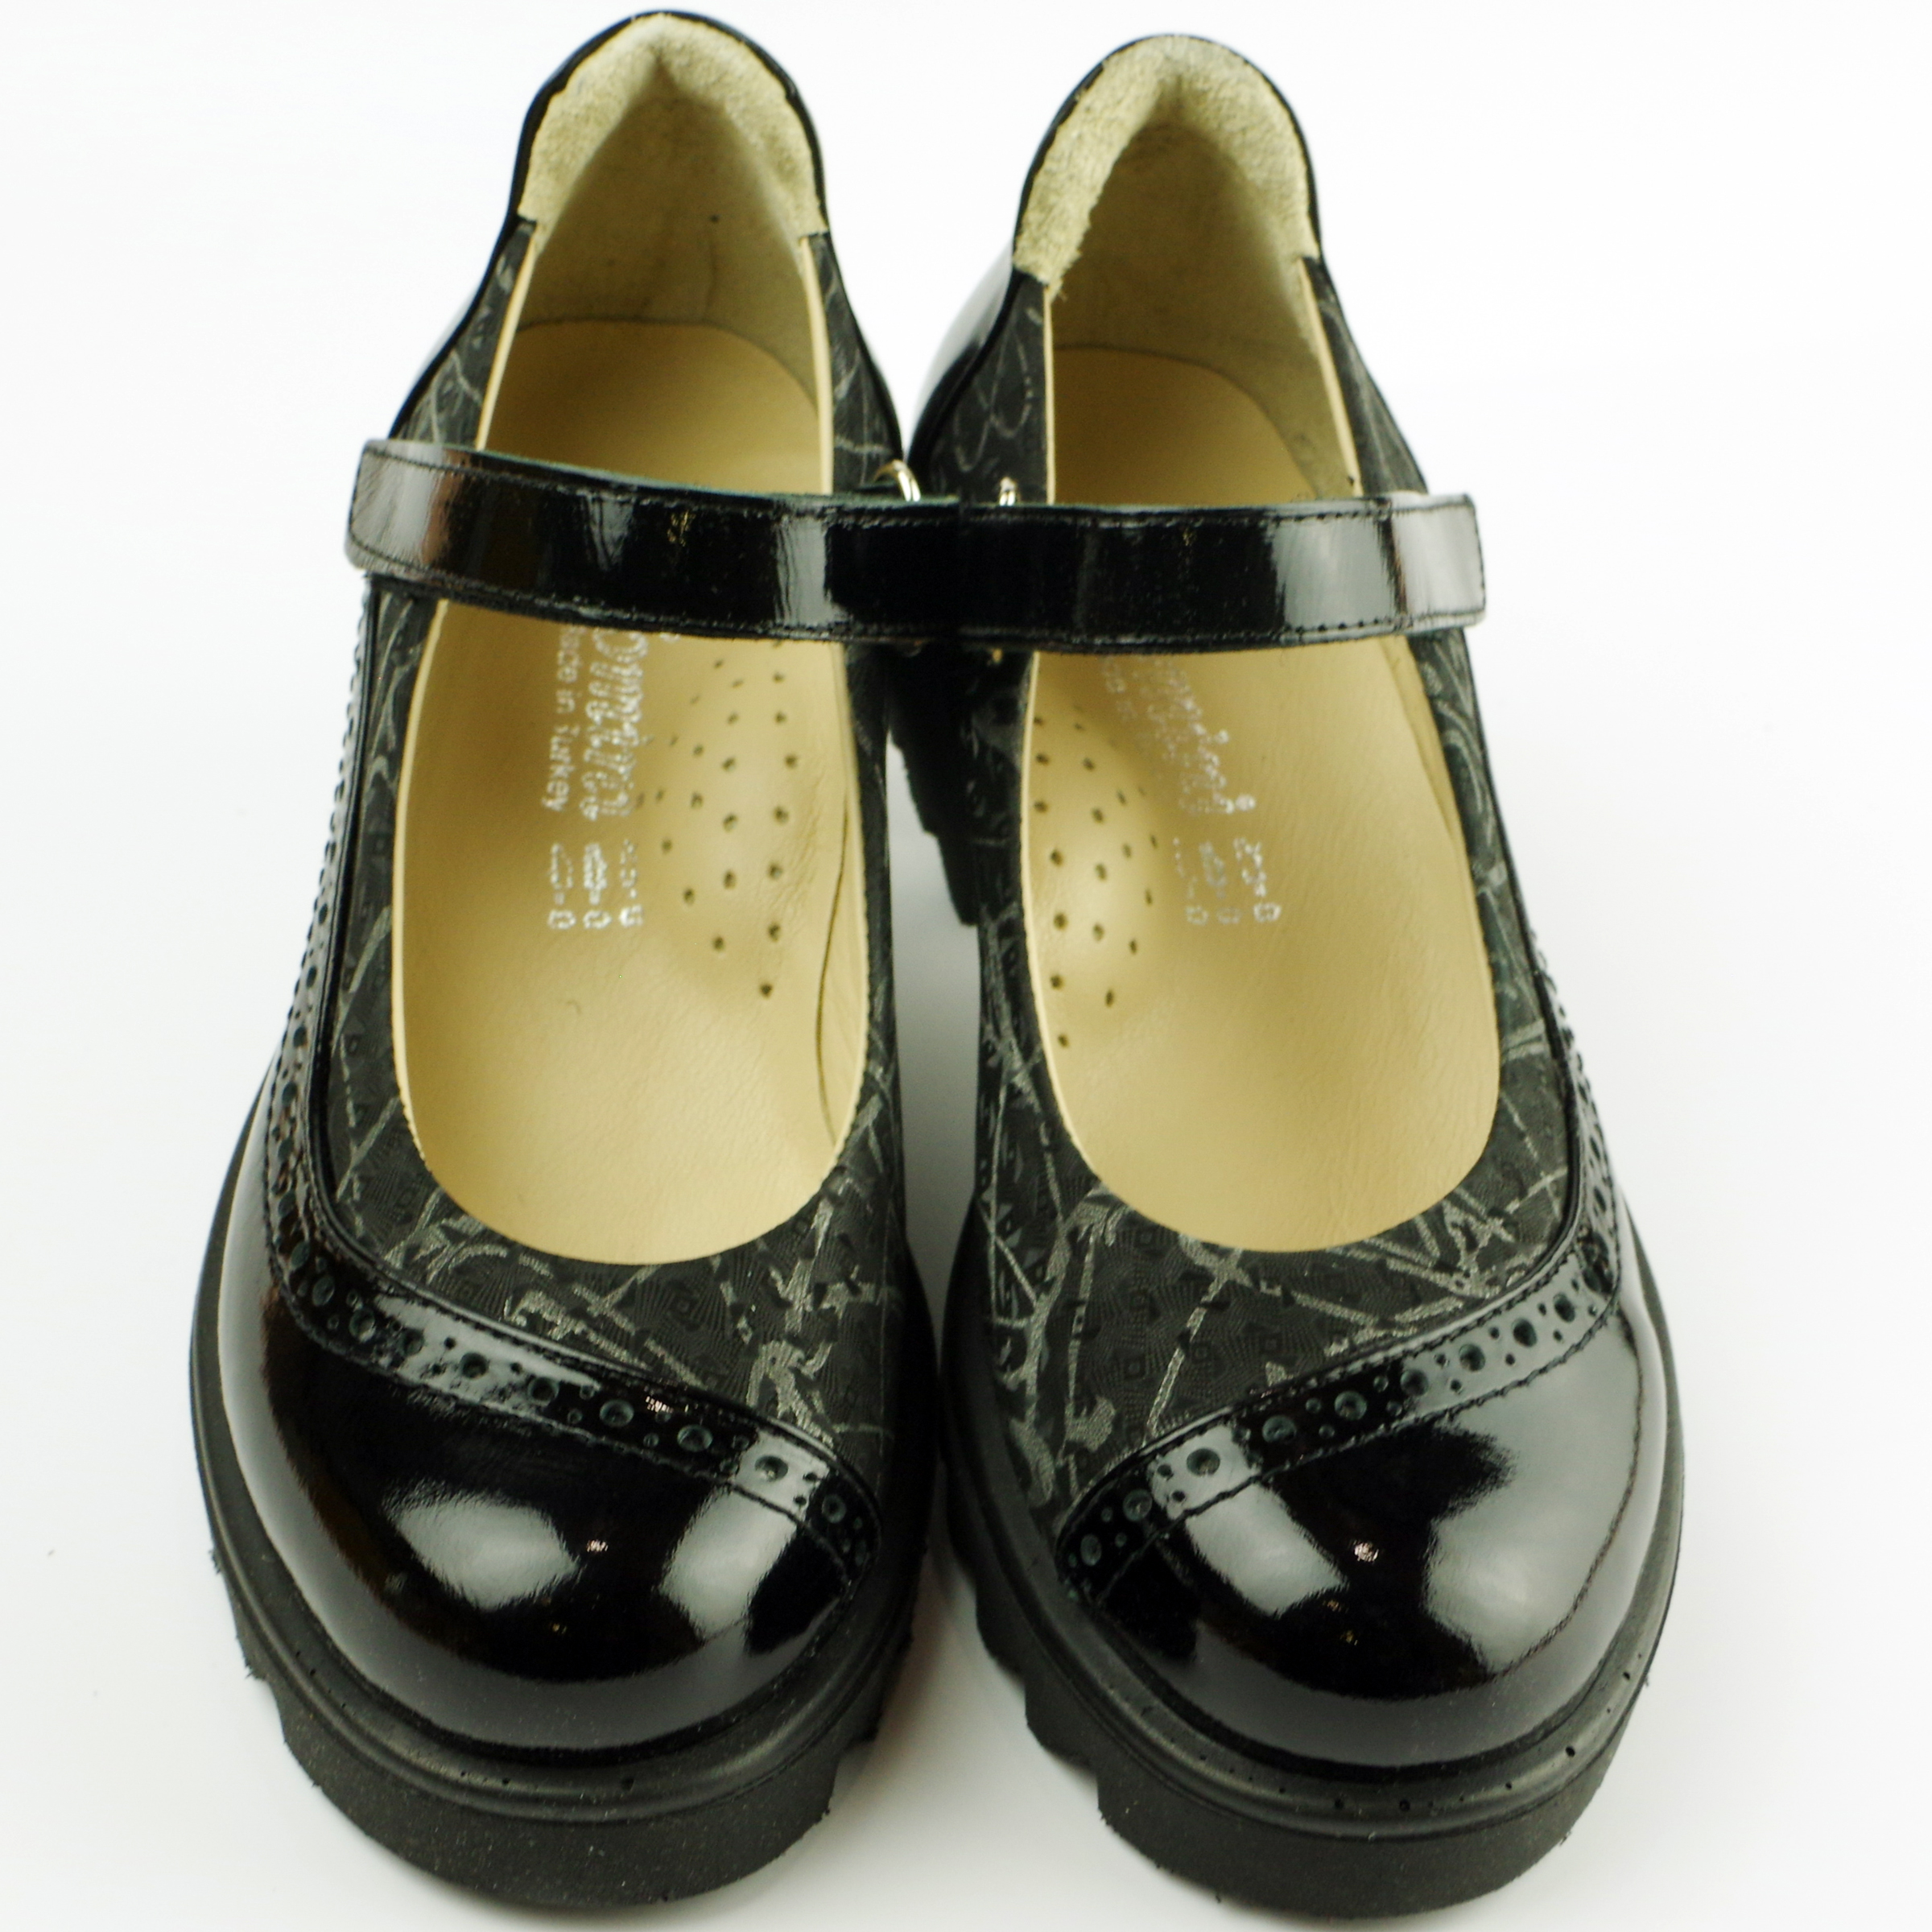 Туфлі дитячі (2116) для дівчинки, матеріал Натуральна шкіра, Чорний колір, 31-36 розміри – Sole Kids. Фото 3